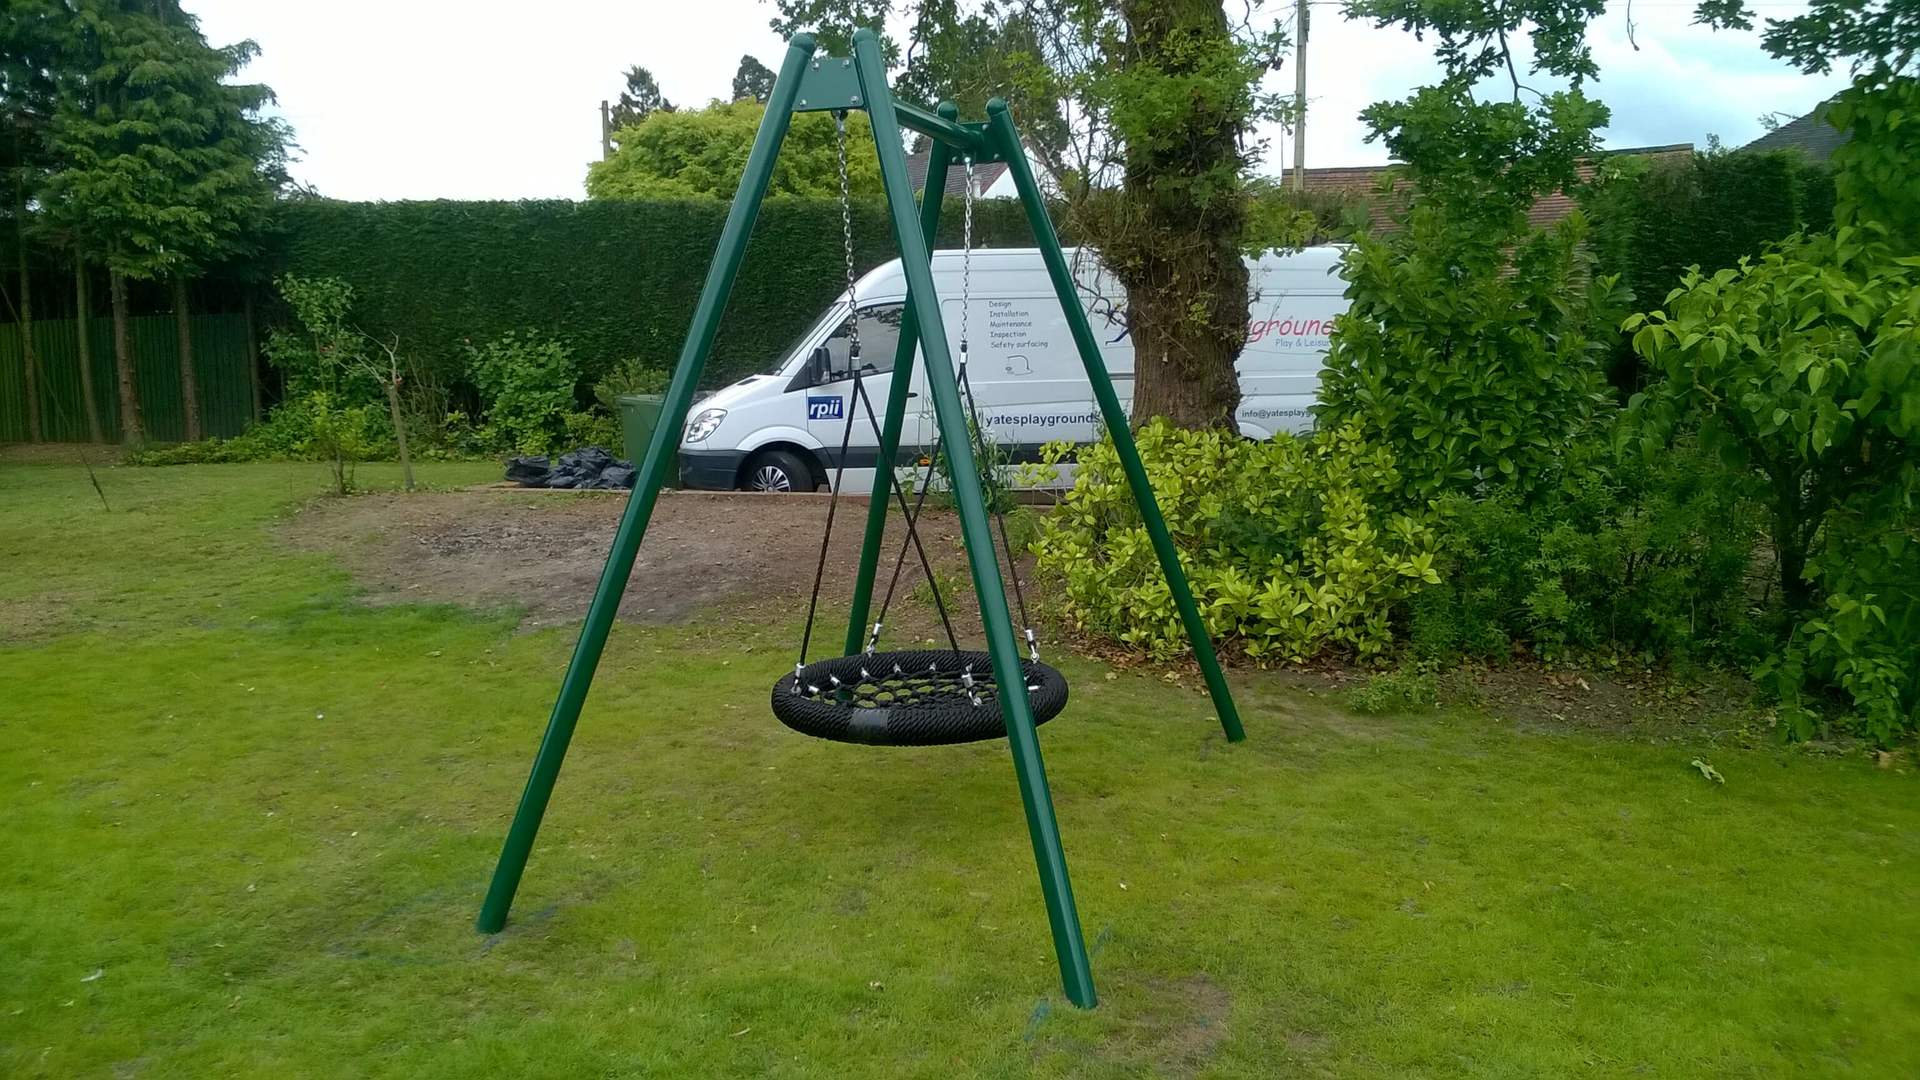 Single Tyre Playground Swing